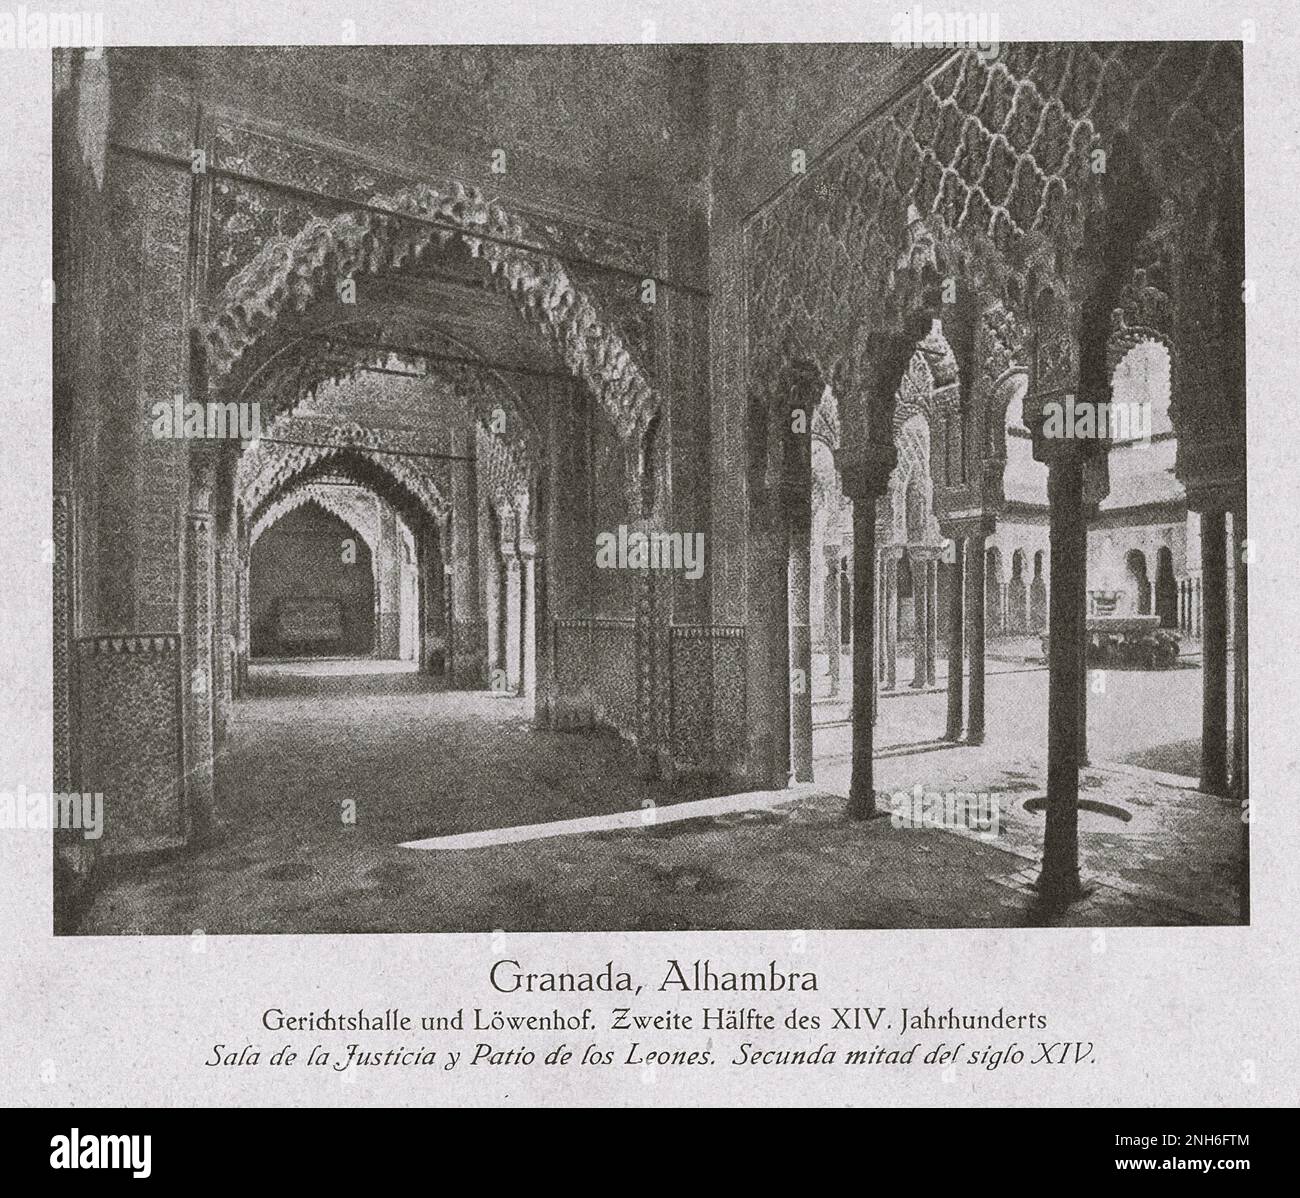 Architettura della Spagna Vecchia. Foto d'epoca della Sala del Consiglio e della Corte dei Lions dei palazzi Nasridi. Seconda metà del XIV secolo. Granada, Alhambra Foto Stock